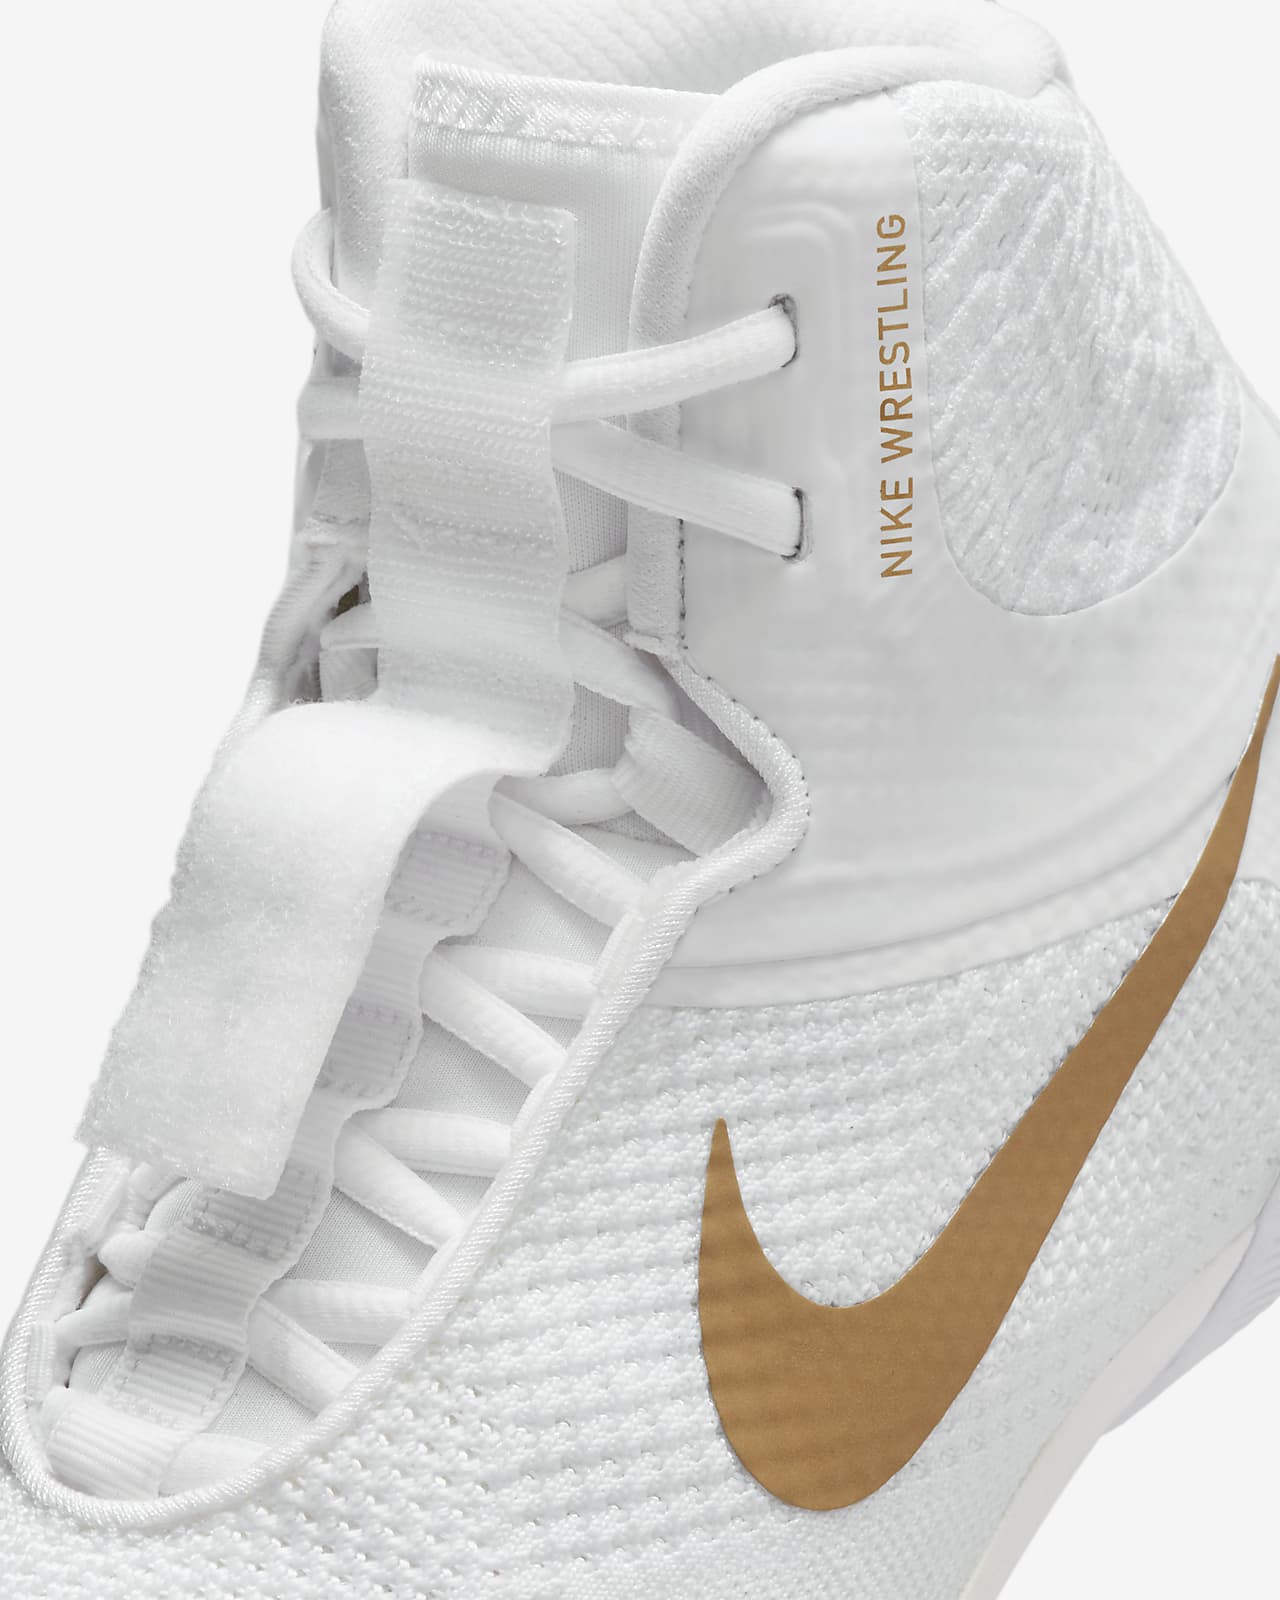 Nike Tawa Wrestling Shoes (White Metallic Gold) | lupon.gov.ph